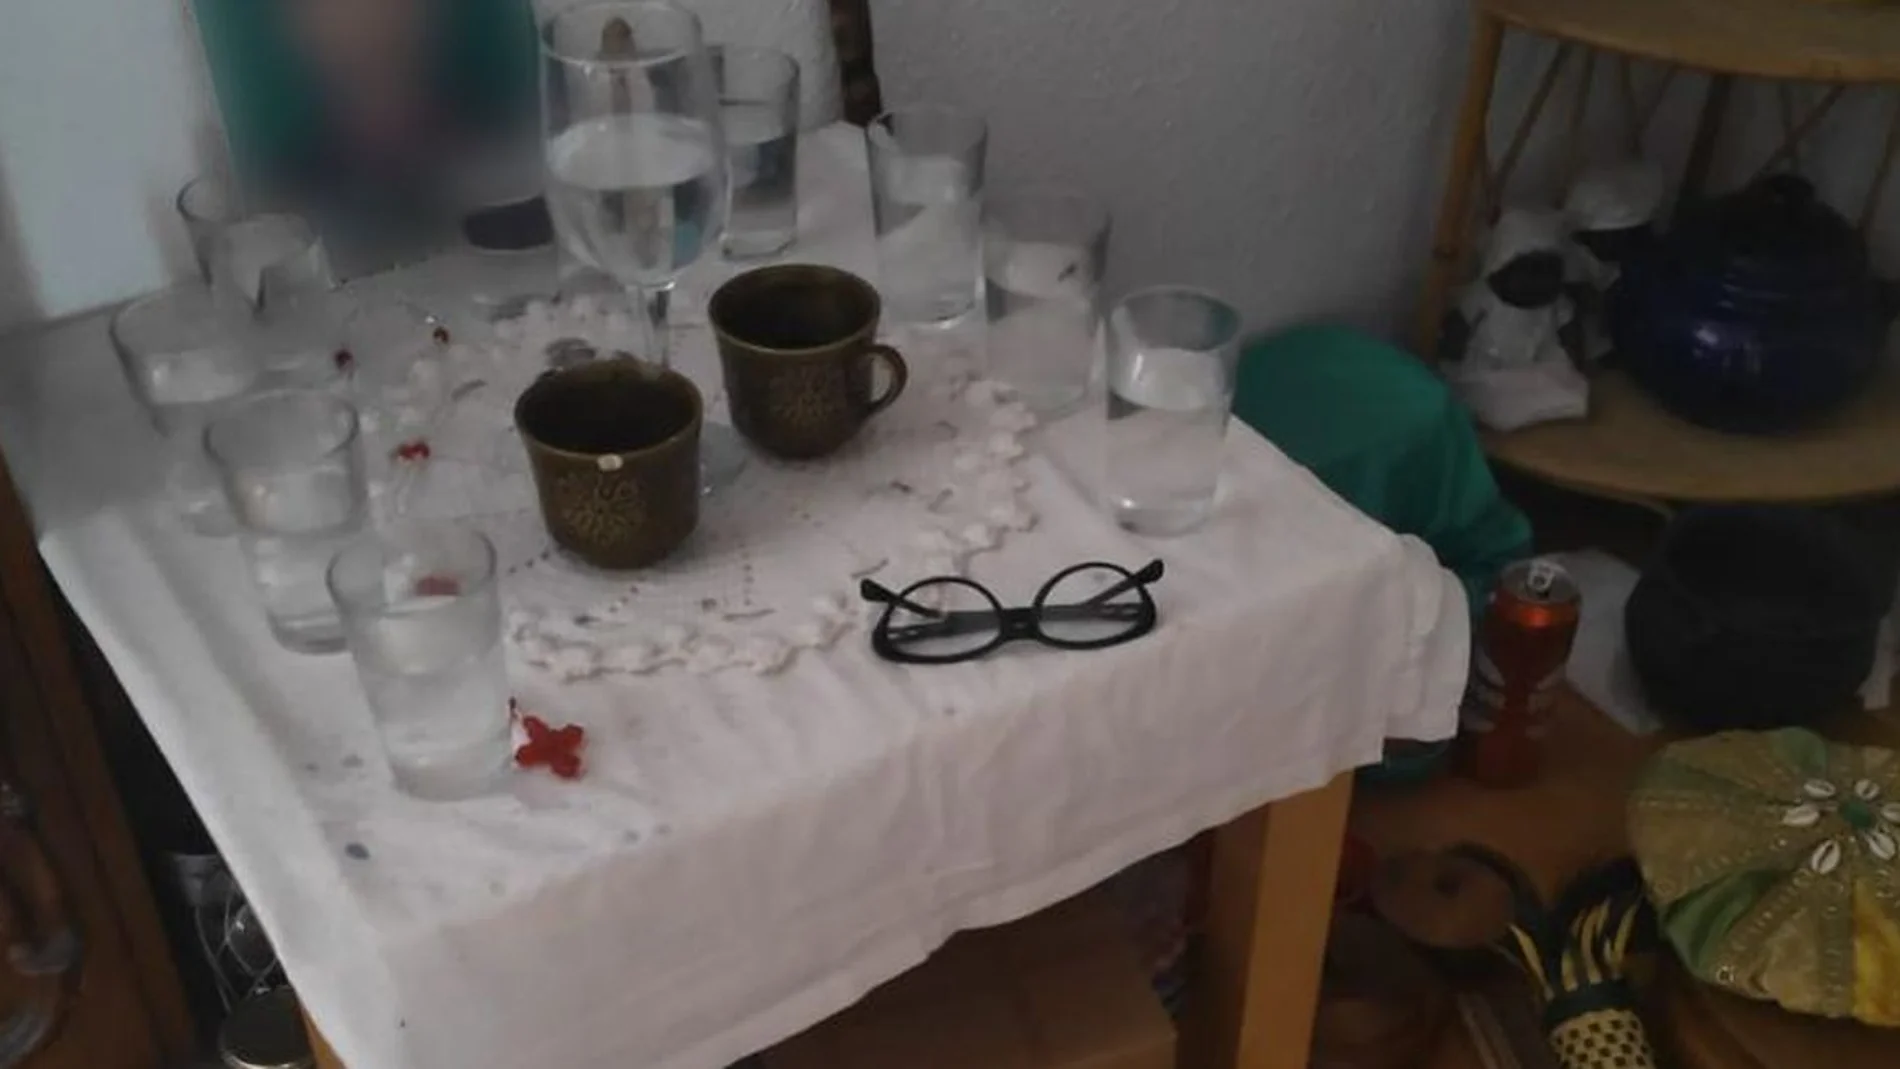 Una abuela intenta agredir a su familia en un ritual satánico en Chamberí